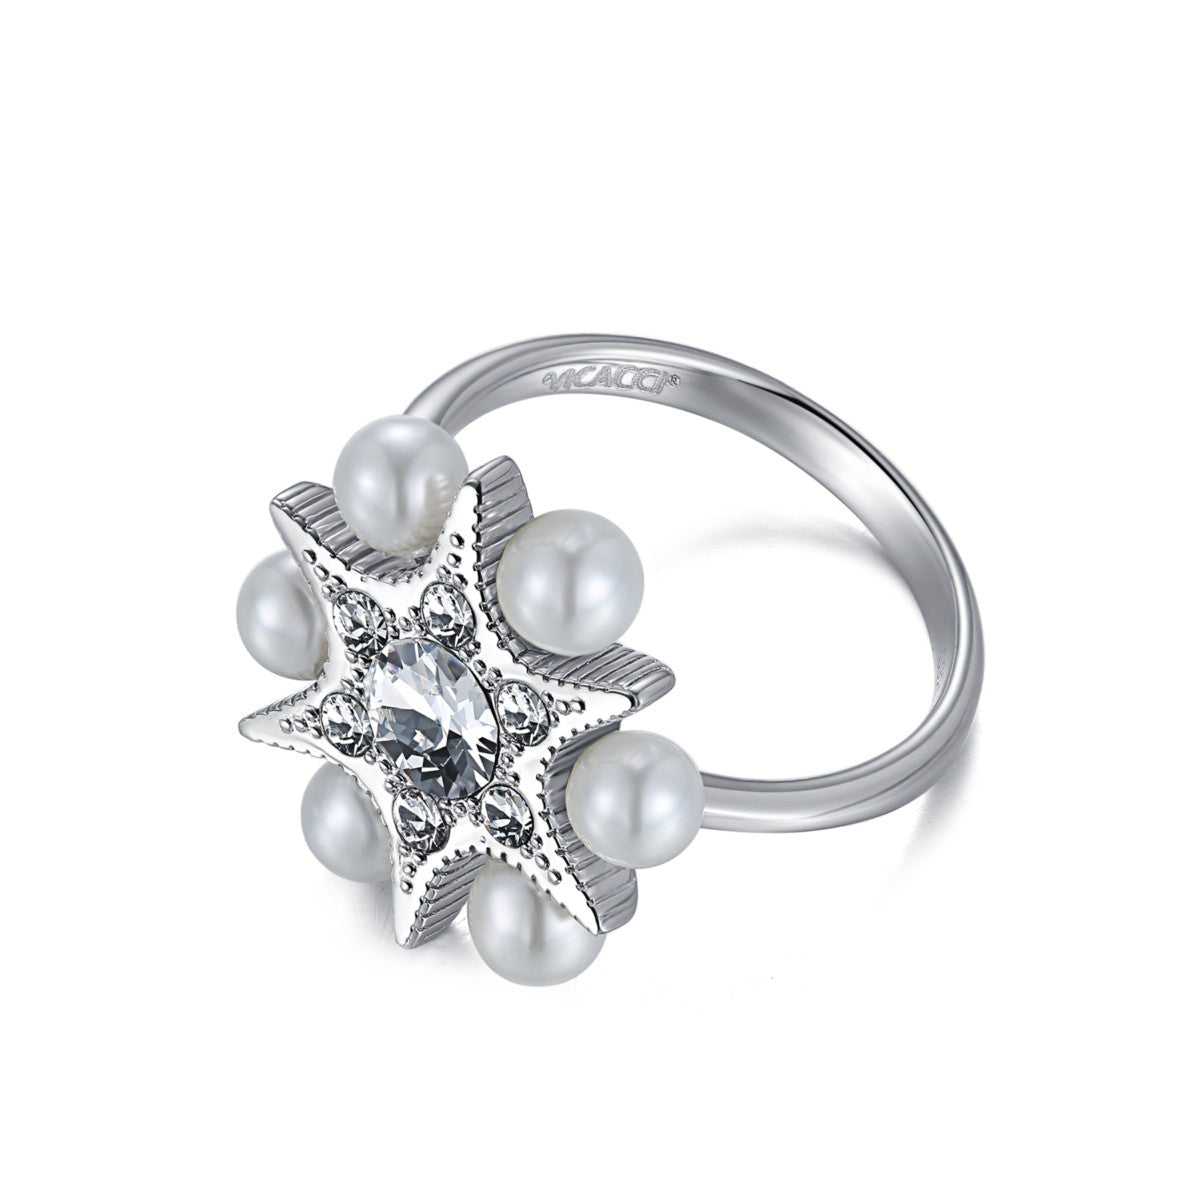 所羅門之星925純銀施華洛世奇水晶珍珠戒指